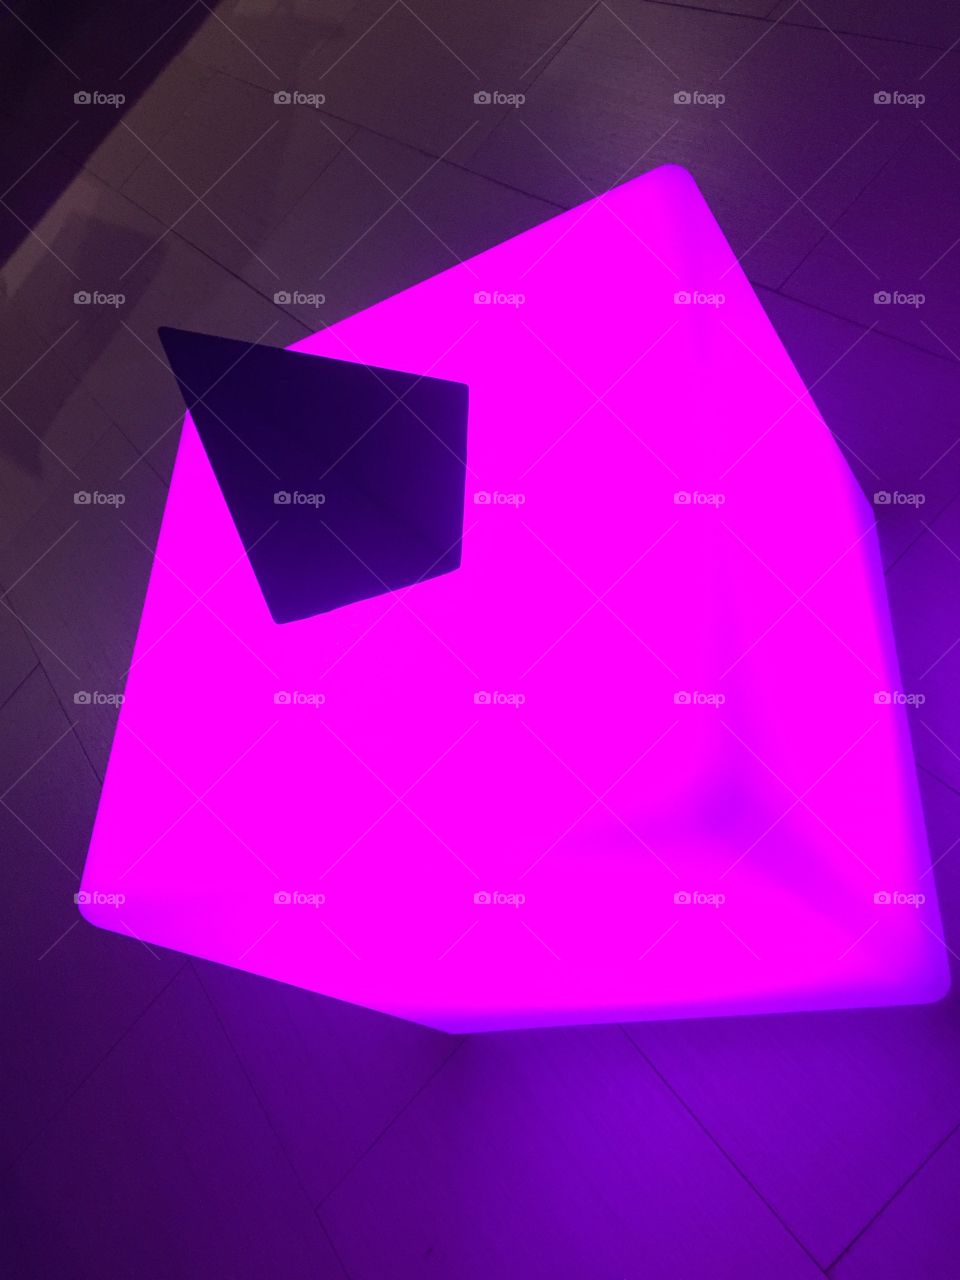 Light vs Dark
Cube vs Pyramid